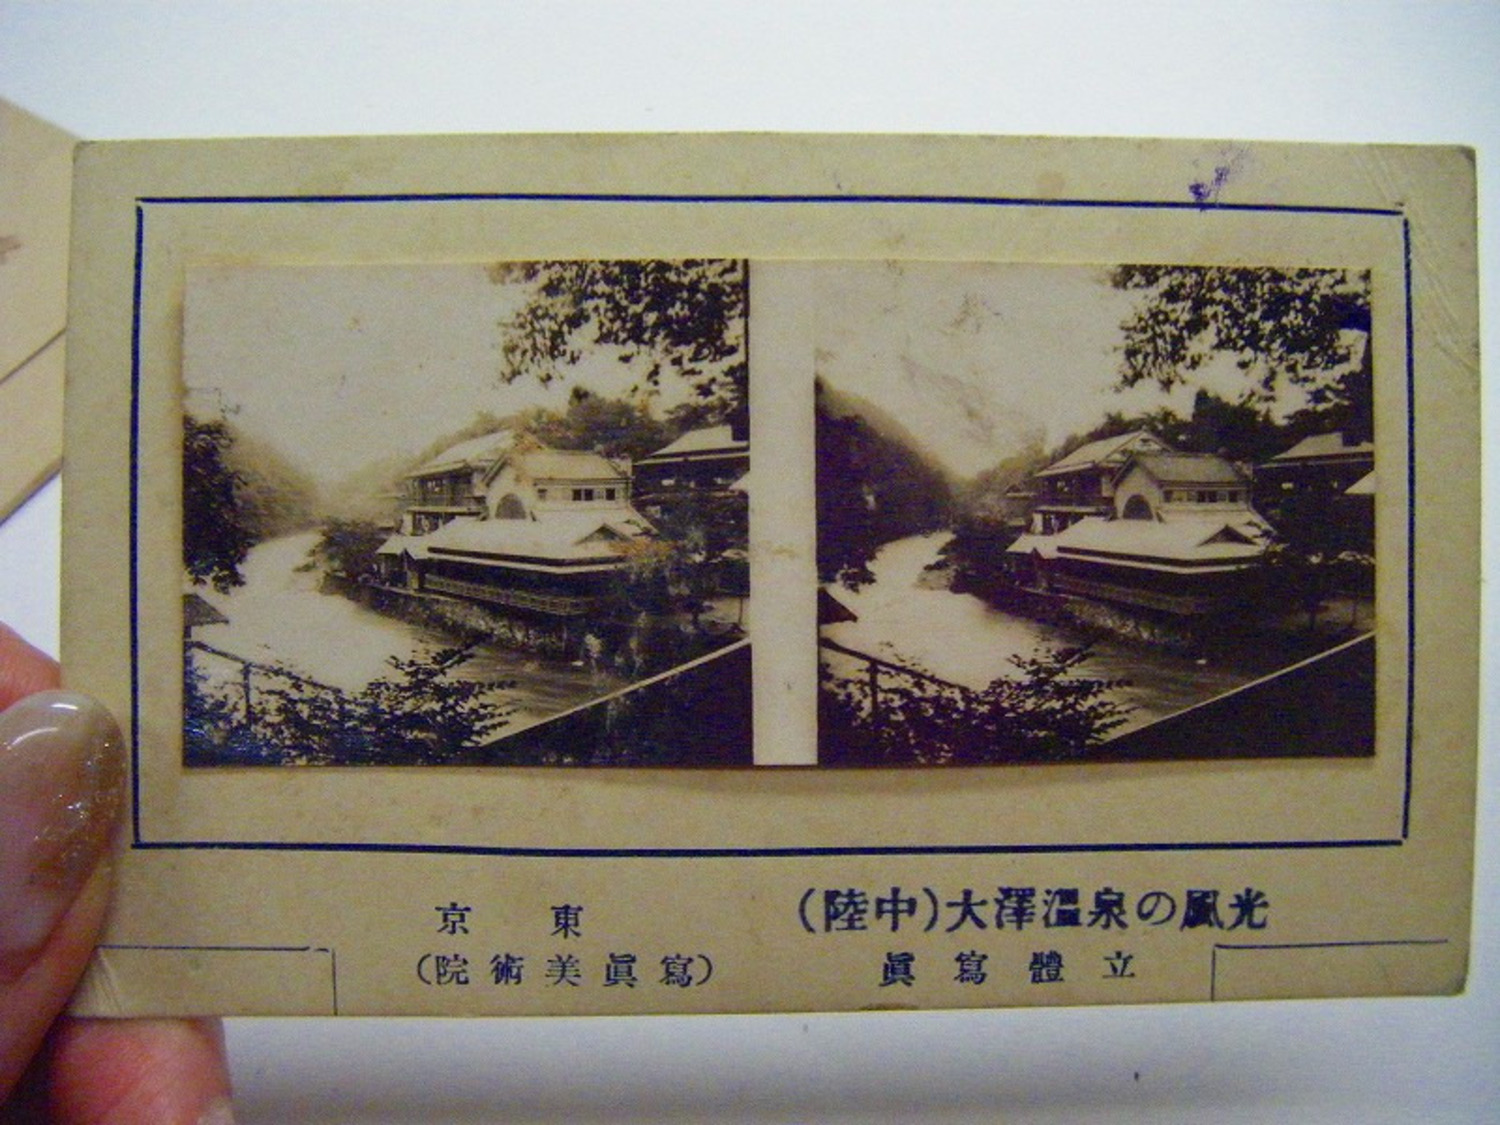 大正 昭和初 戦前 名所 おもちゃ 岩手「大沢温泉 温泉 みやげ 立体写真」袋付 陸中